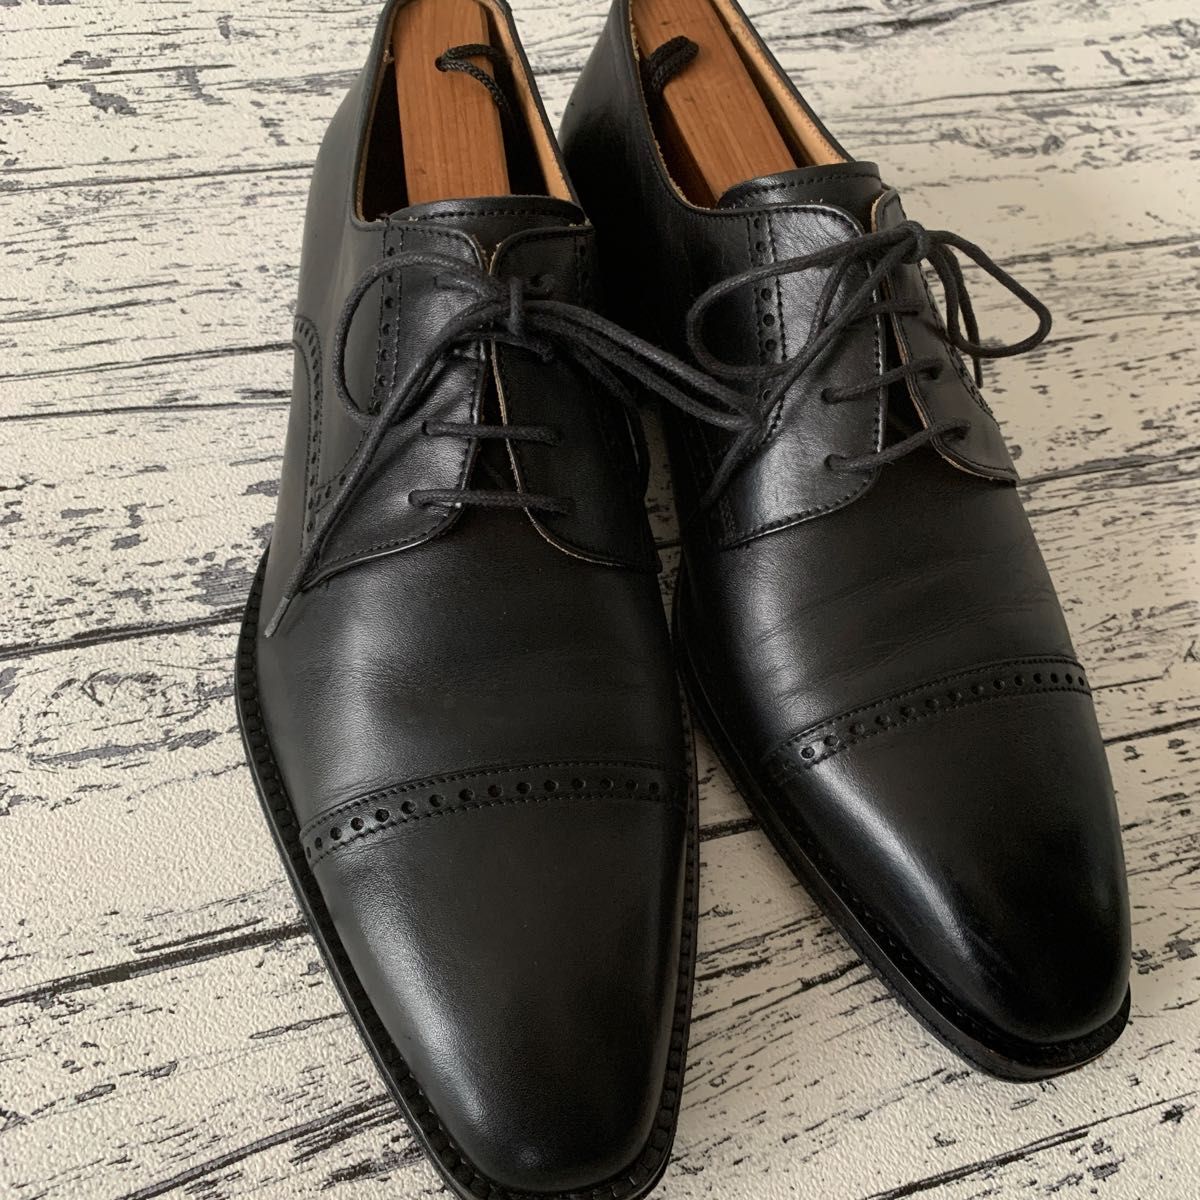 Trading Post 革靴 クォーターブローグ サイズ40 イタリア製 ブラック 